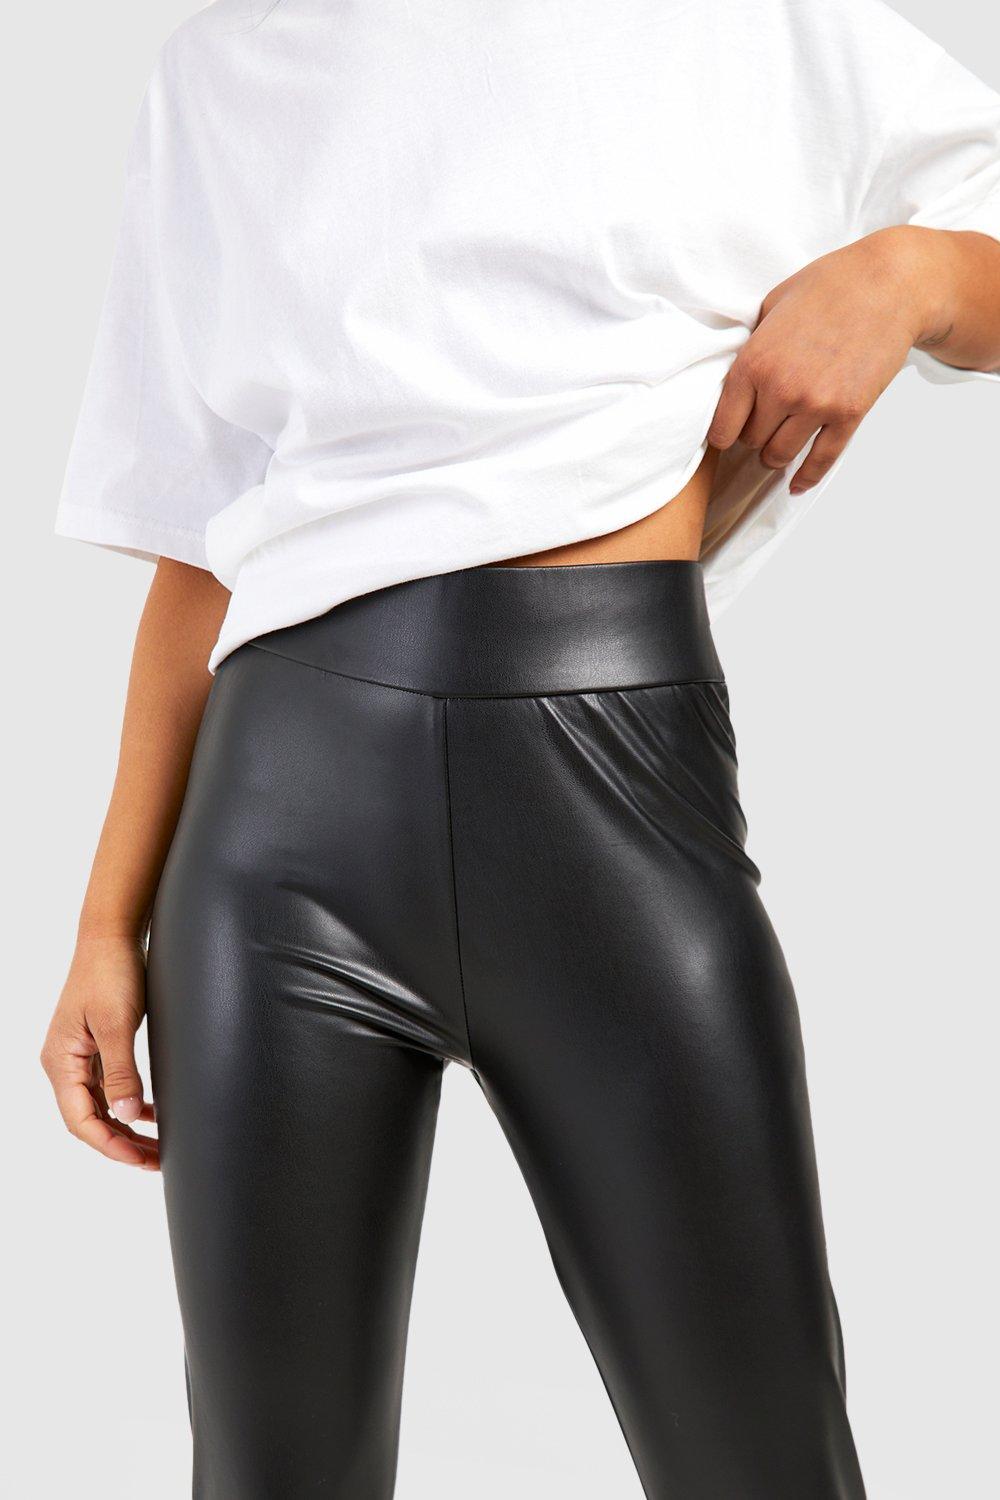 Black Faux Leather Pants Petite  Faux Leather Leggings Petite